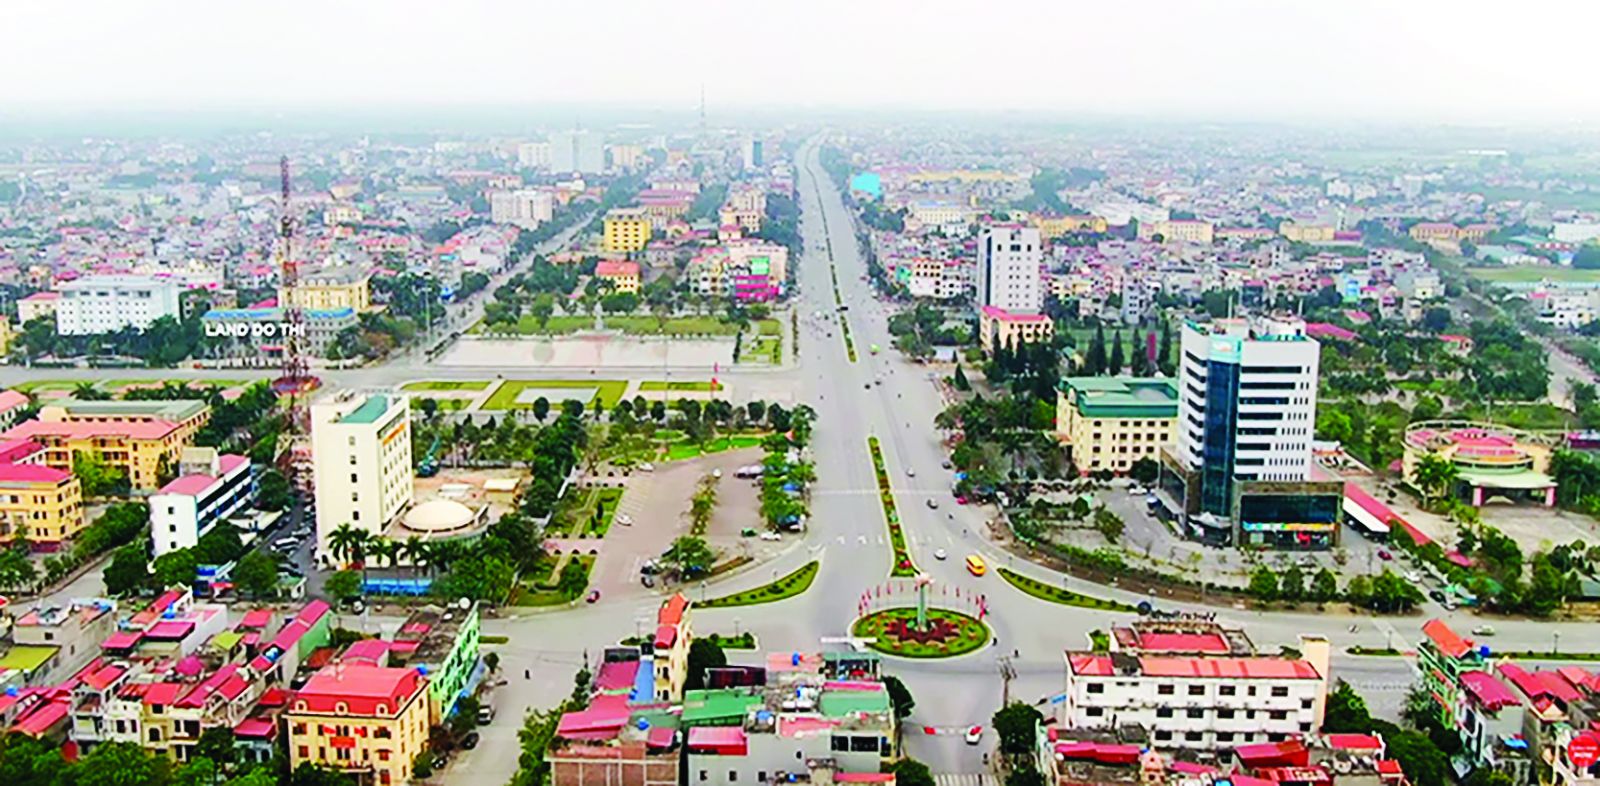  Thành phố Hưng Yên ngày nay trong thời kỳ hội nhập kinh tế quốc tế.